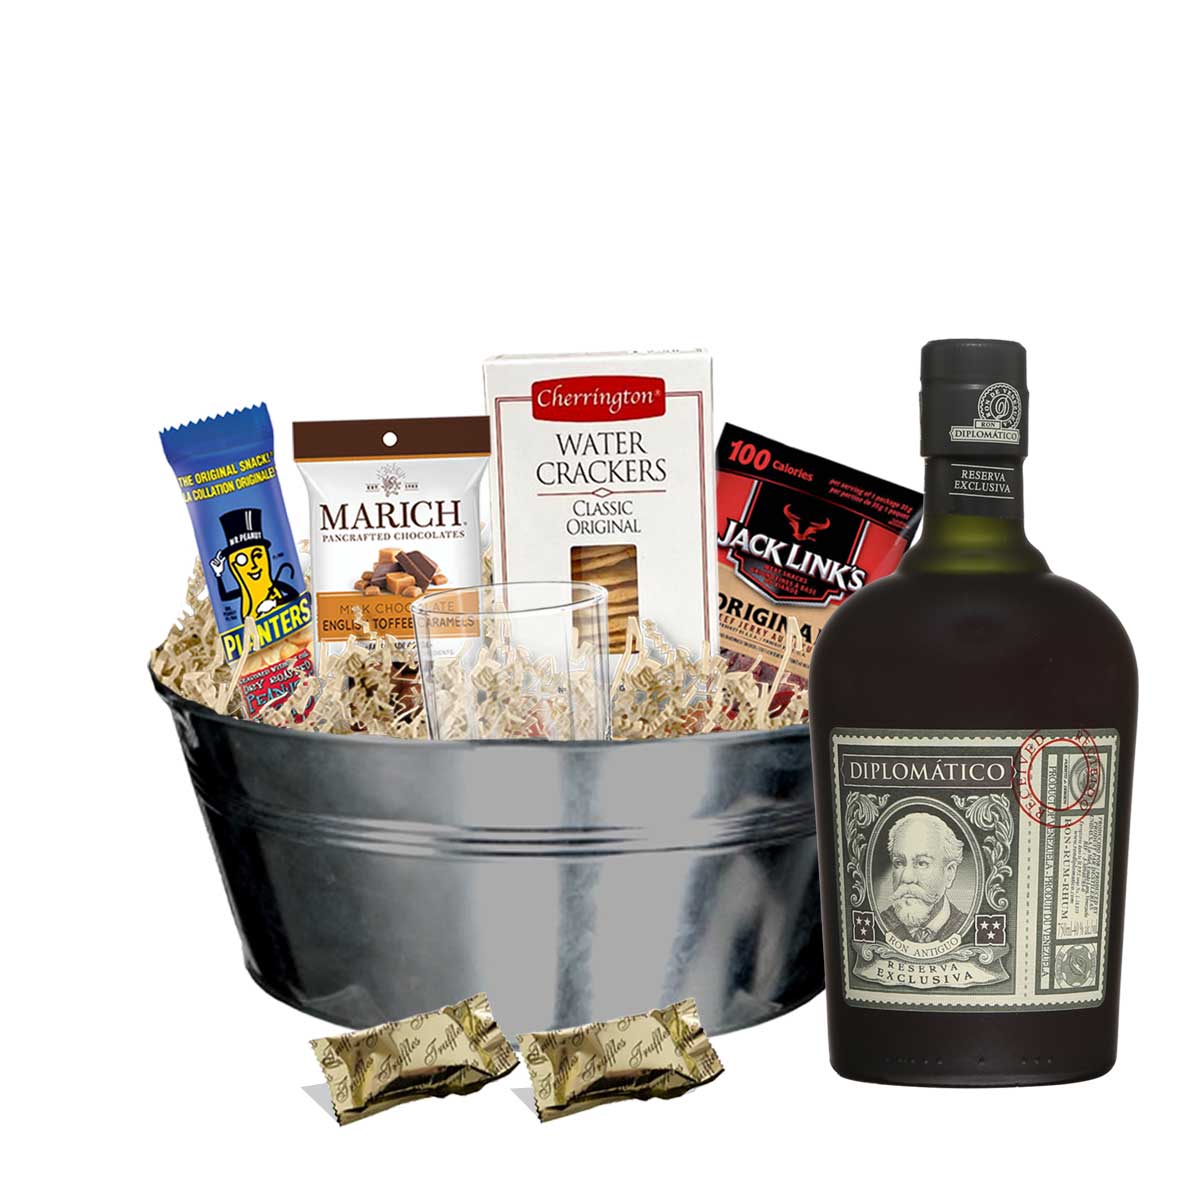 TAG Liquor Stores BC - Diplomatico Reserva Exclusiva Rum 750ml Gift Basket